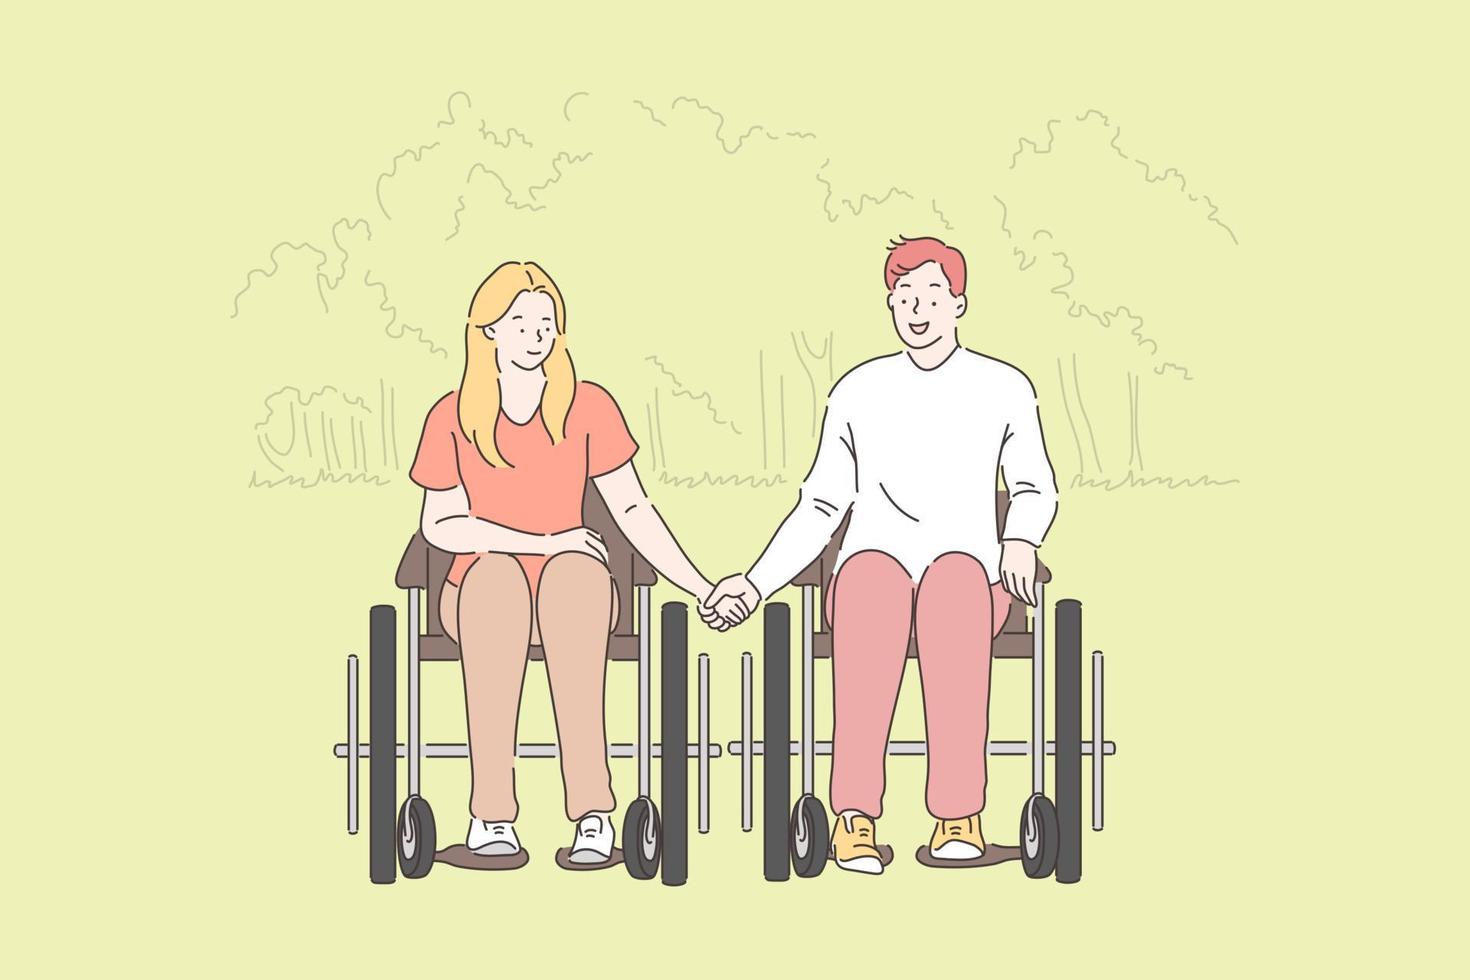 discapacitado gente, romántico relación concepto vector